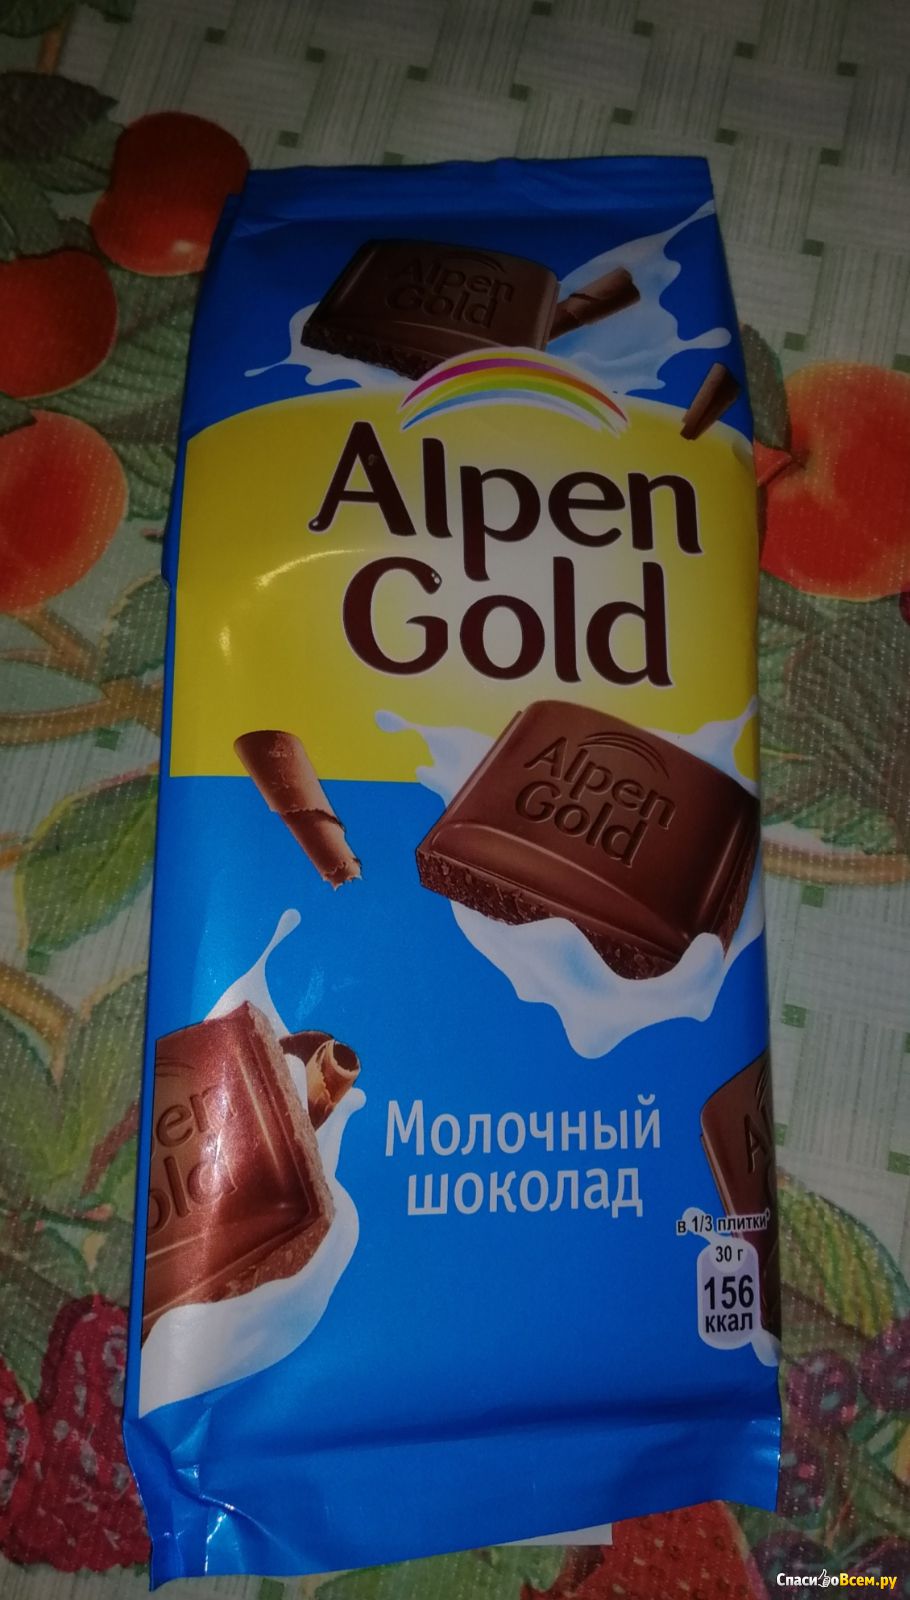 Плитка шоколада масса. Шоколадка Альпен Гольд. Шоколад альренгольд грамм. Шоколад Альпен Гольд молочный вес. Шоколад Альпен Гольд вес шоколадки.